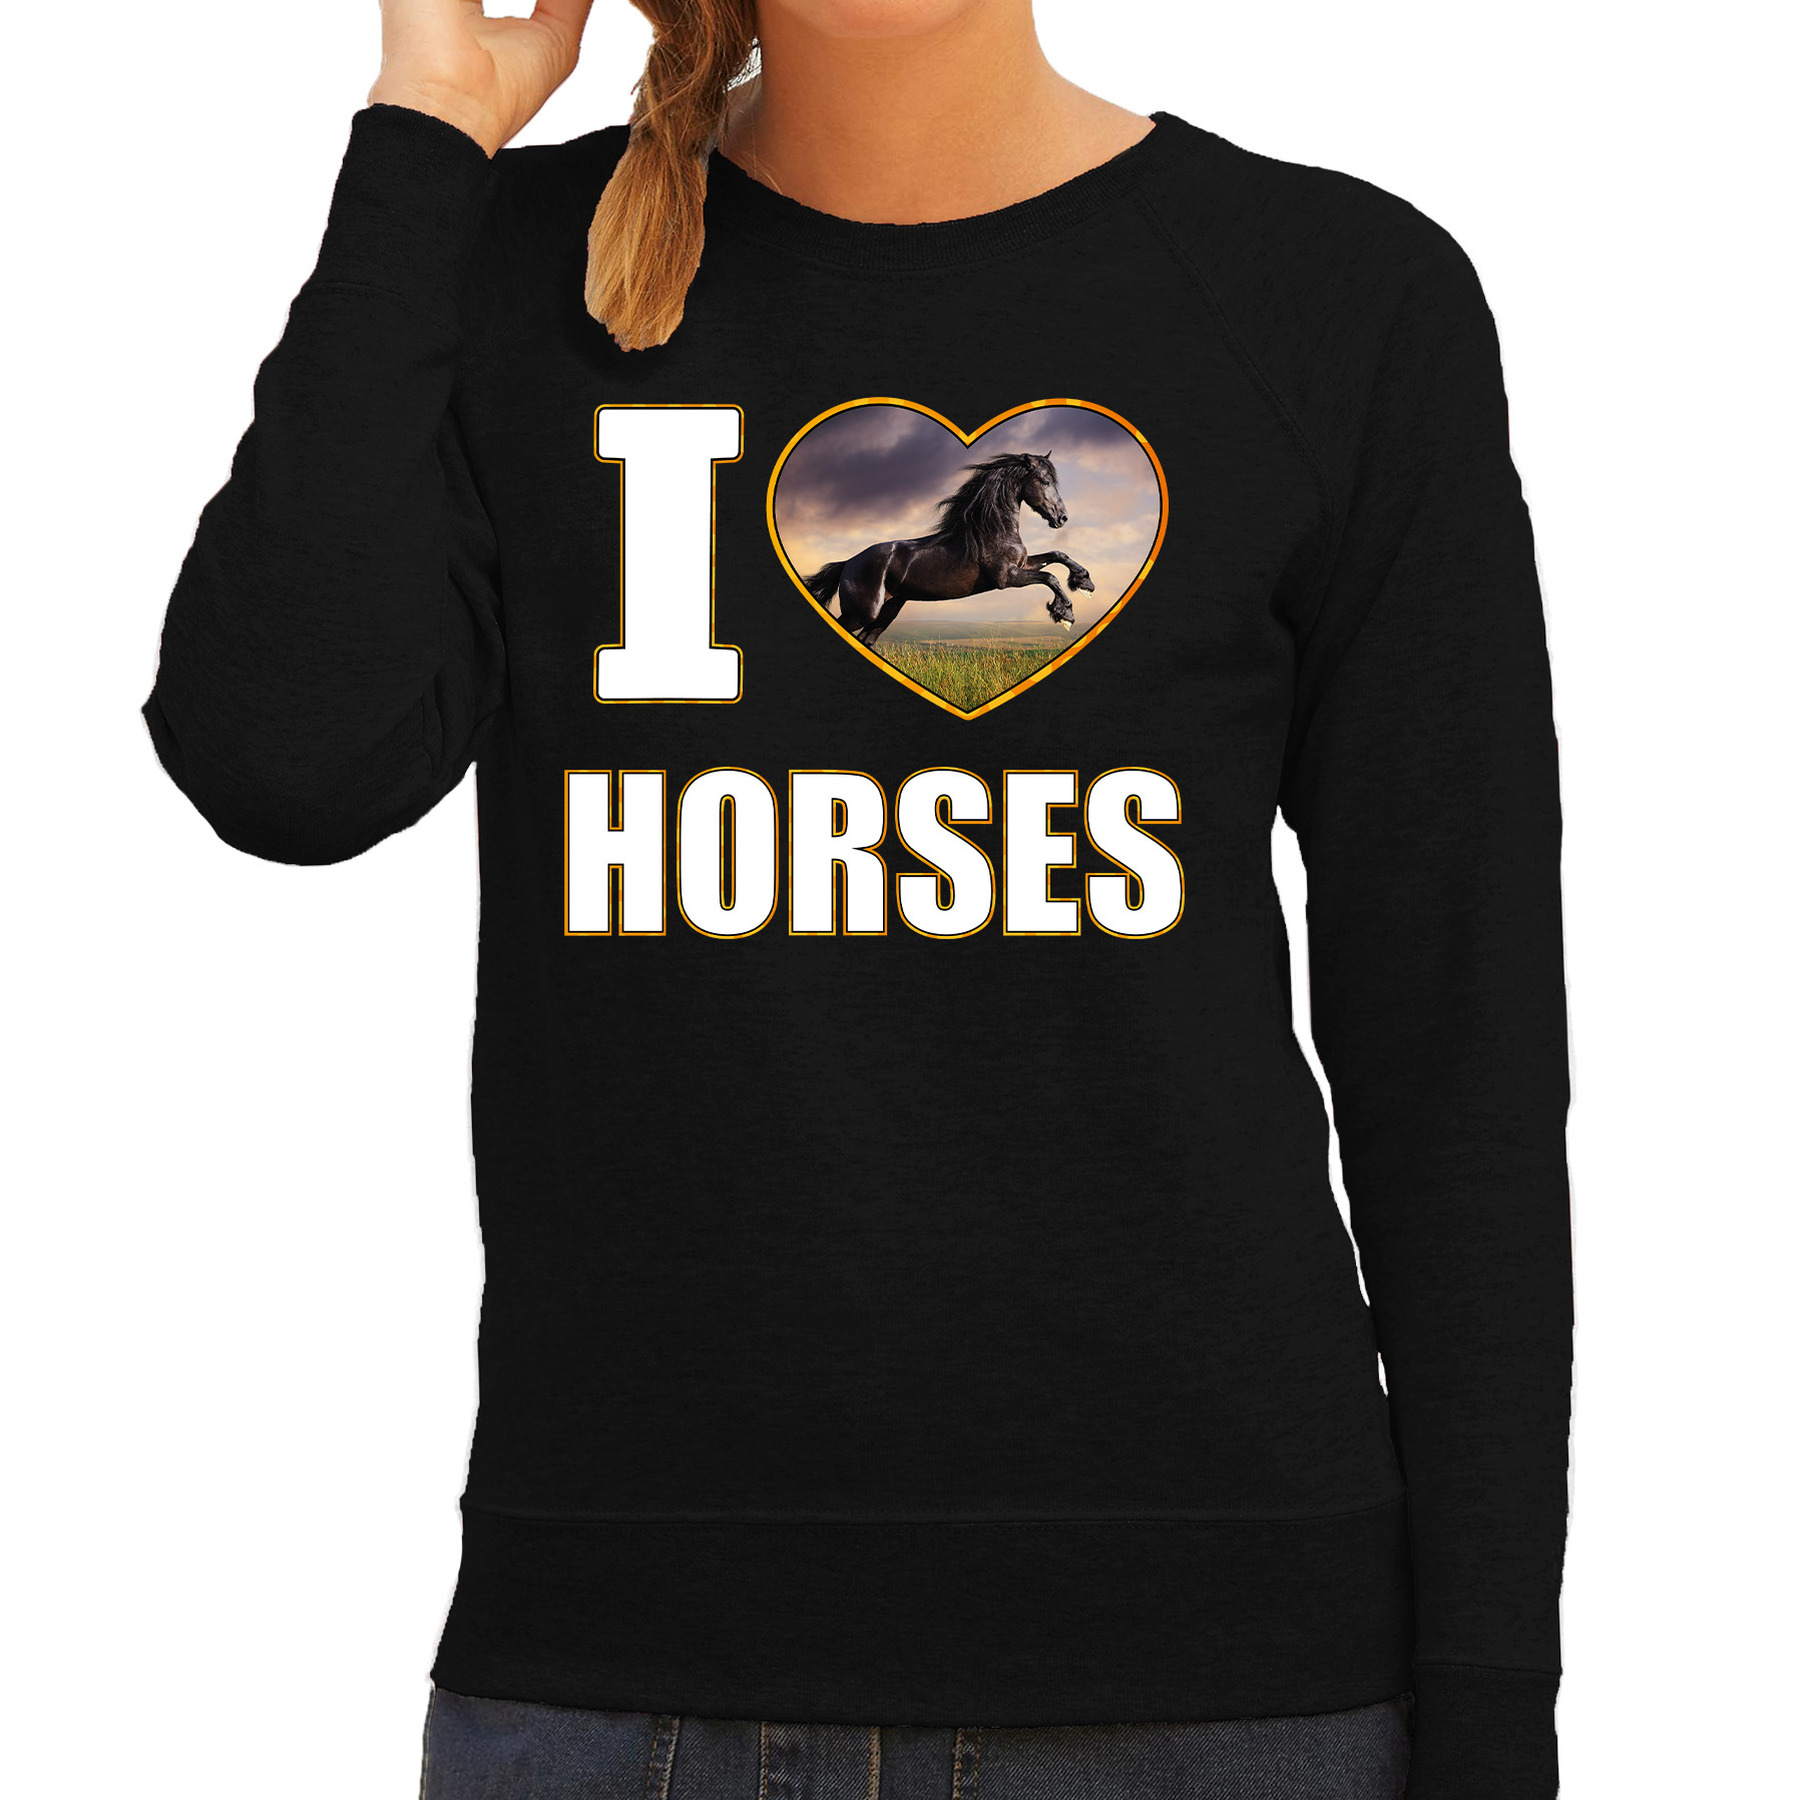 I love horses sweater - trui met dieren foto van een zwart paard zwart voor dames